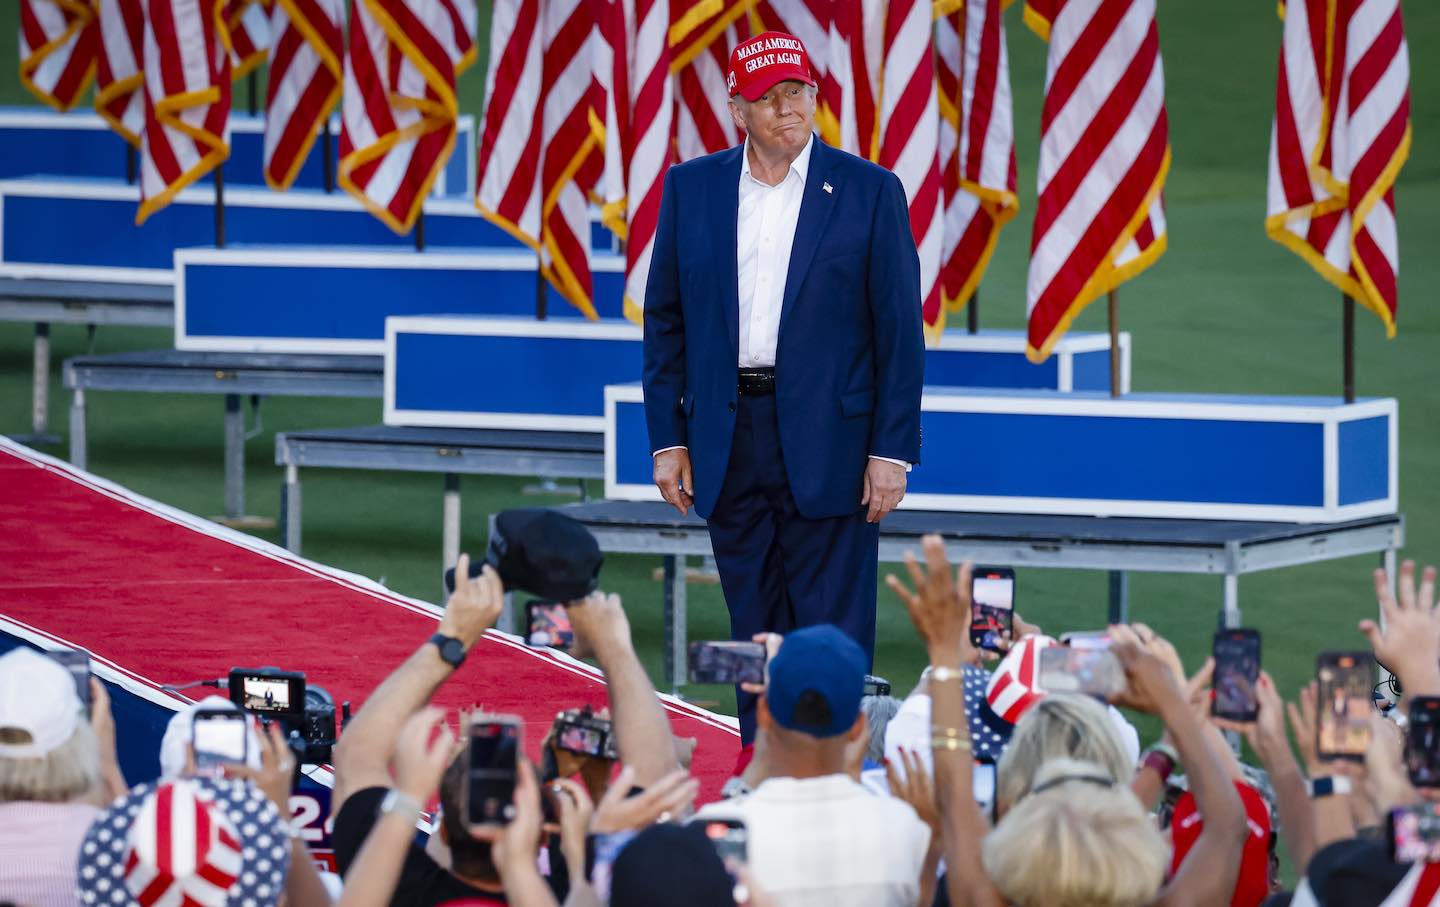 Donald Trump Campaigns In Florida